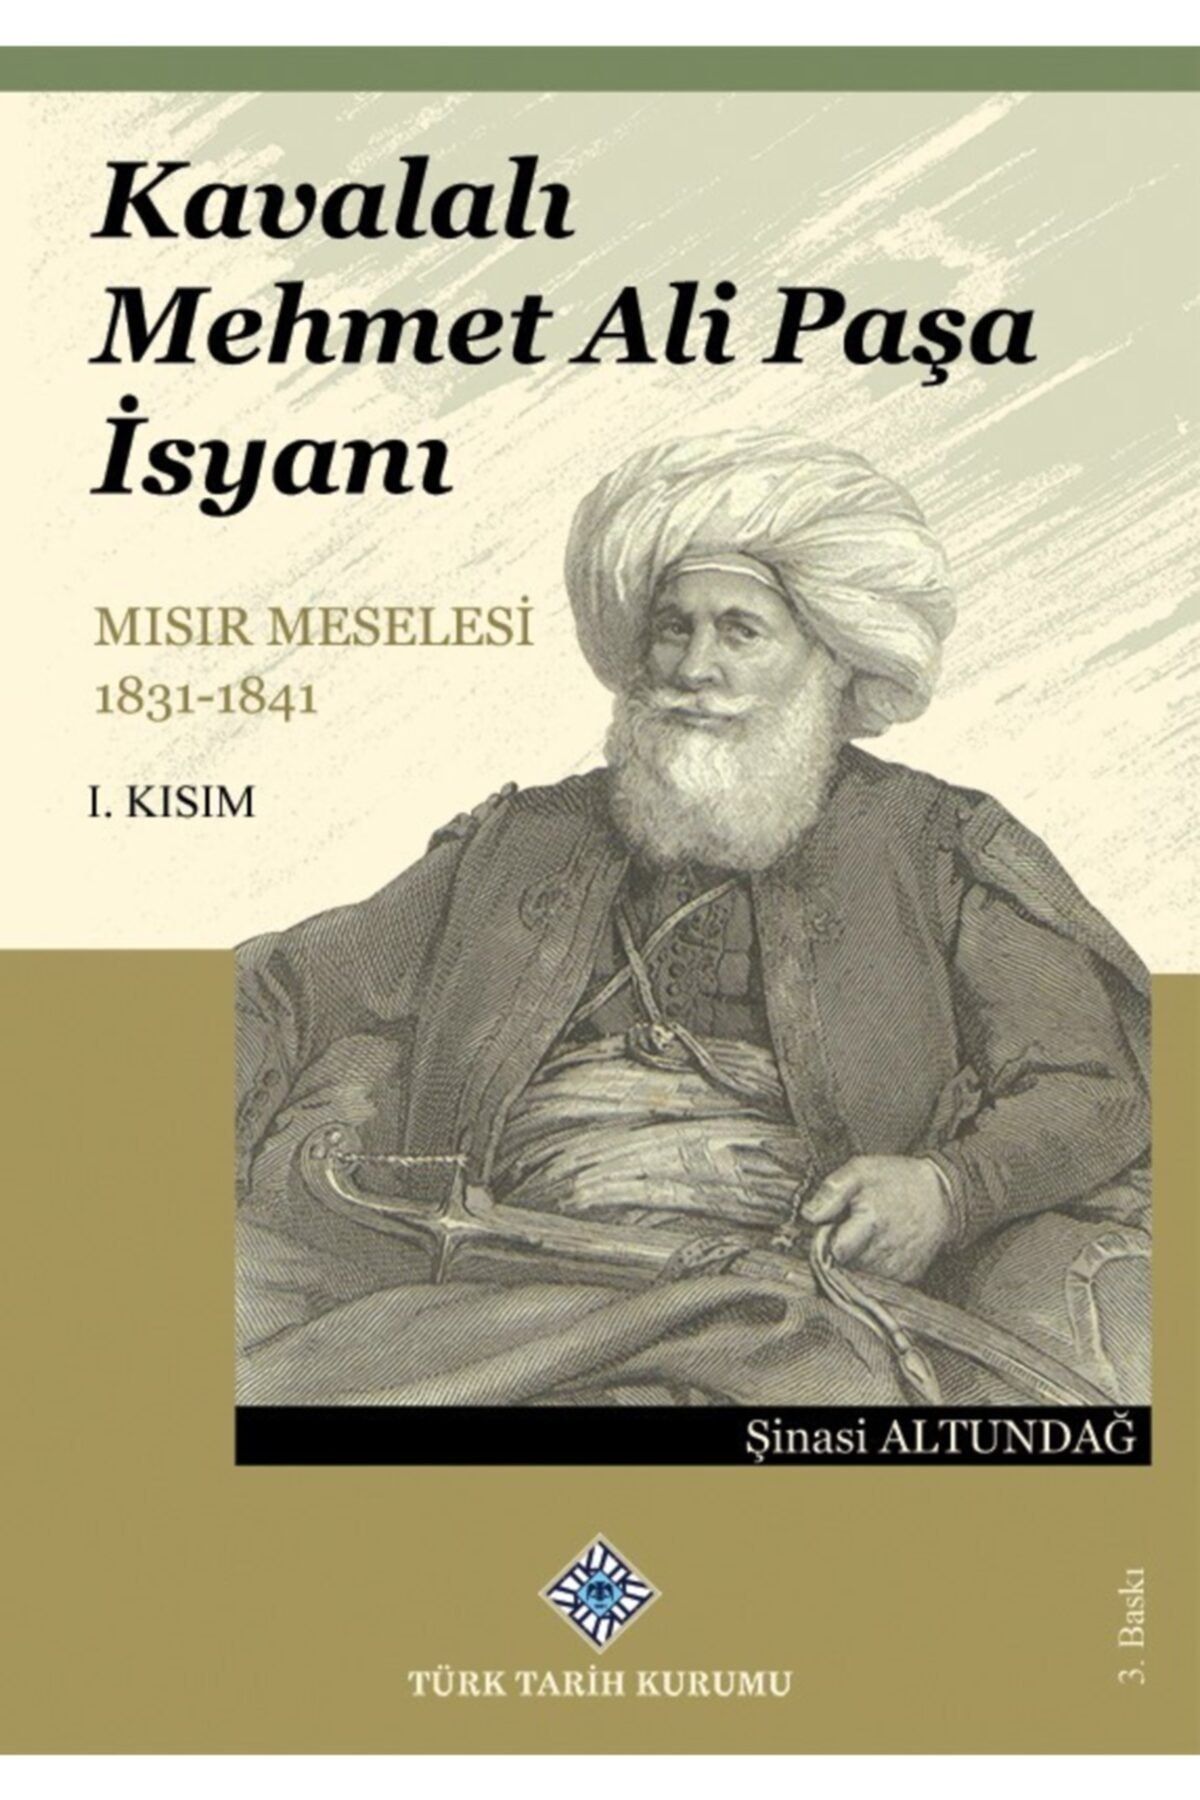 Türk Tarih Kurumu Yayınları Kavalalı Mehmet Ali Paşa Isyanı Mısır Meselesi 1831-1841 I. Kısım